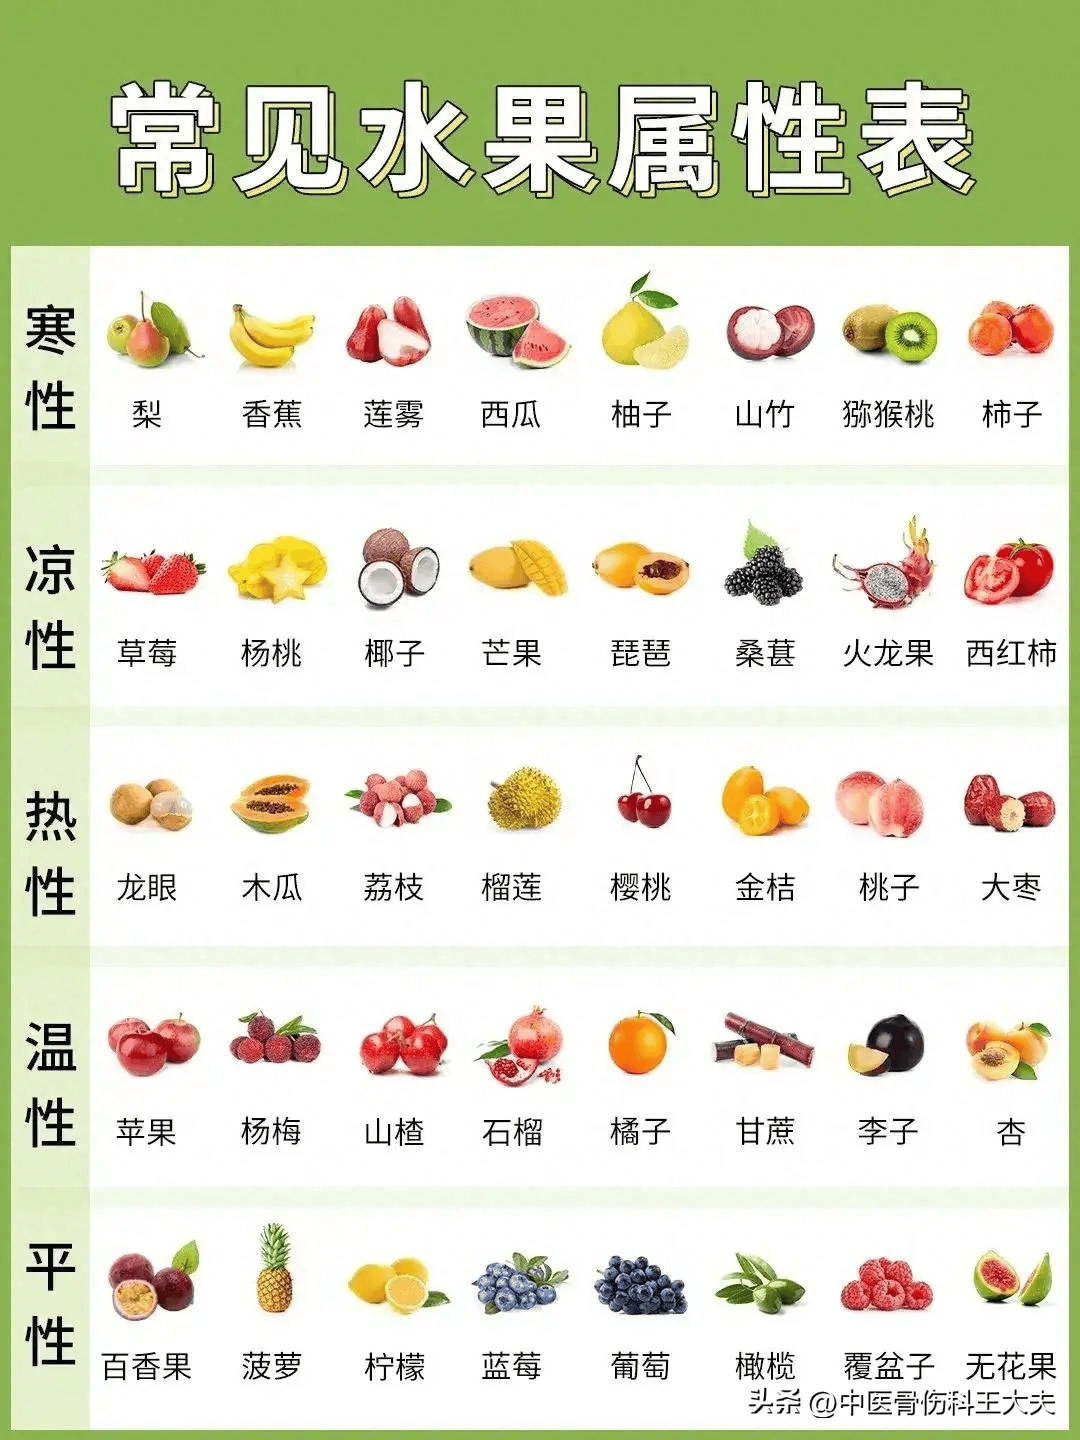 水果也有寒性,热性,凉性之分日常水果选择需注意!